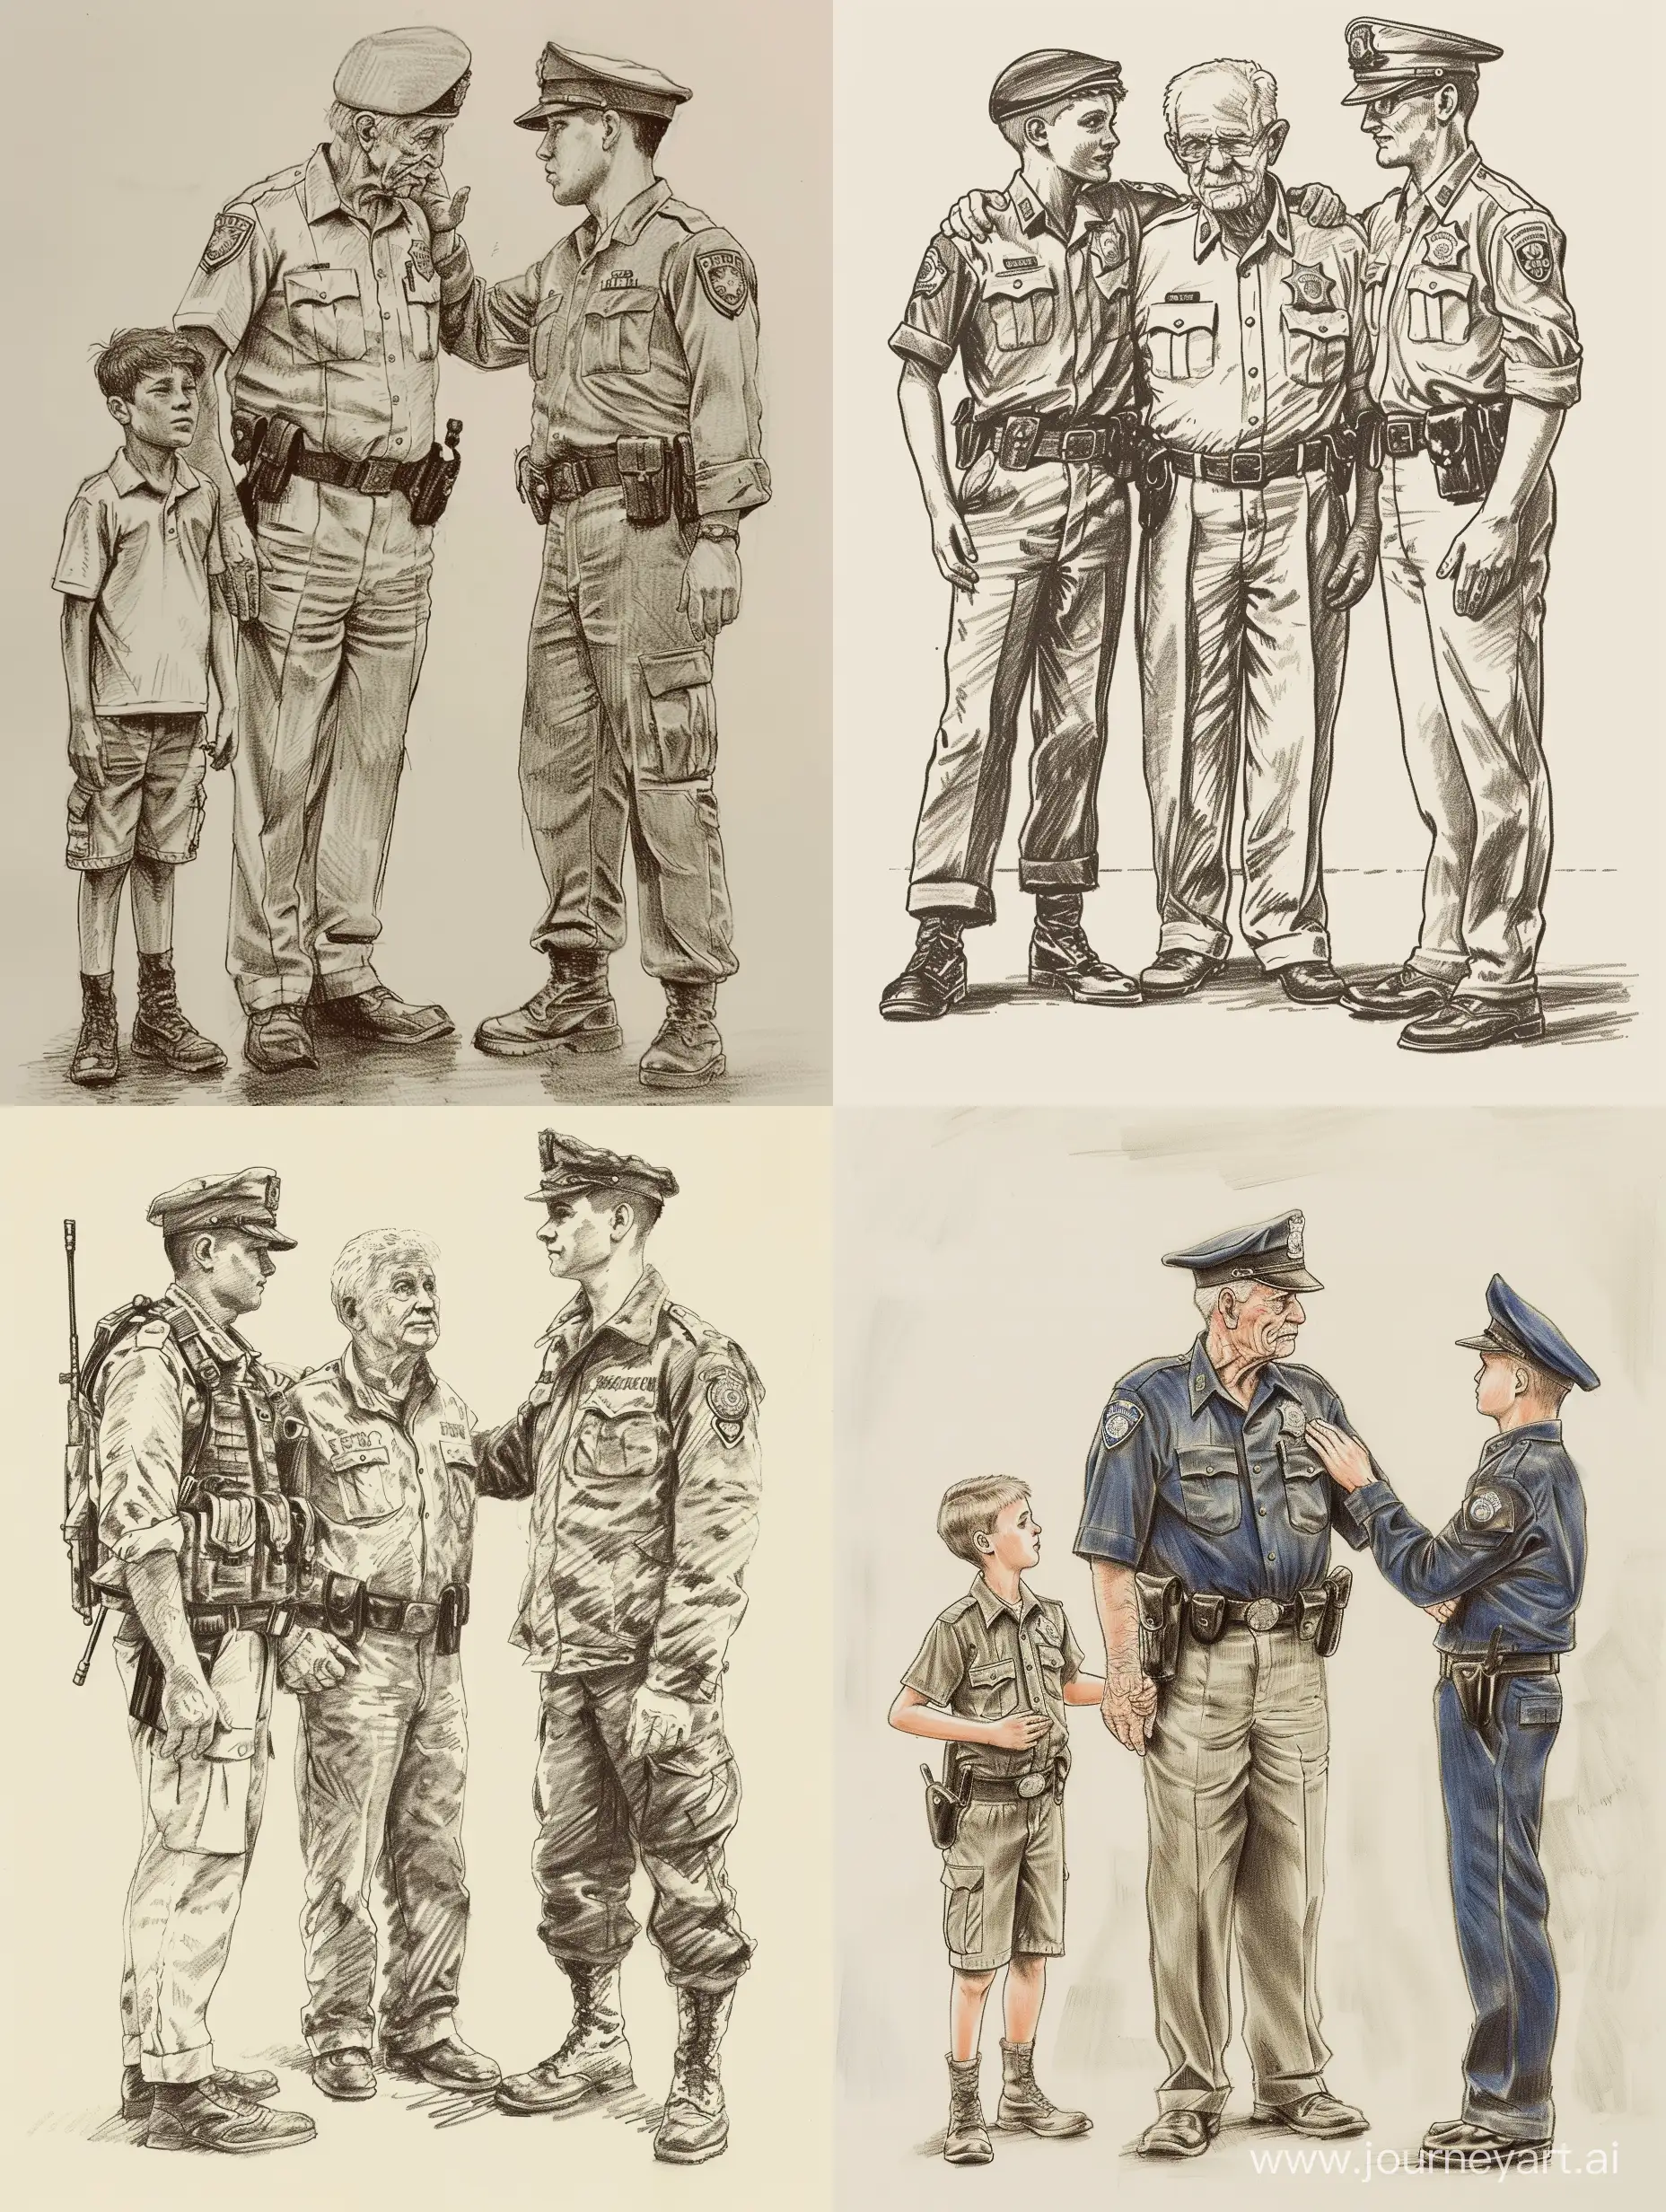 рисунок пожилой мужчина полицейский стоит рядом с мальчиком 9 лет и молодым военным офицером рядом, молодой офицер, положил руку на плечо пожилому полицейскому.